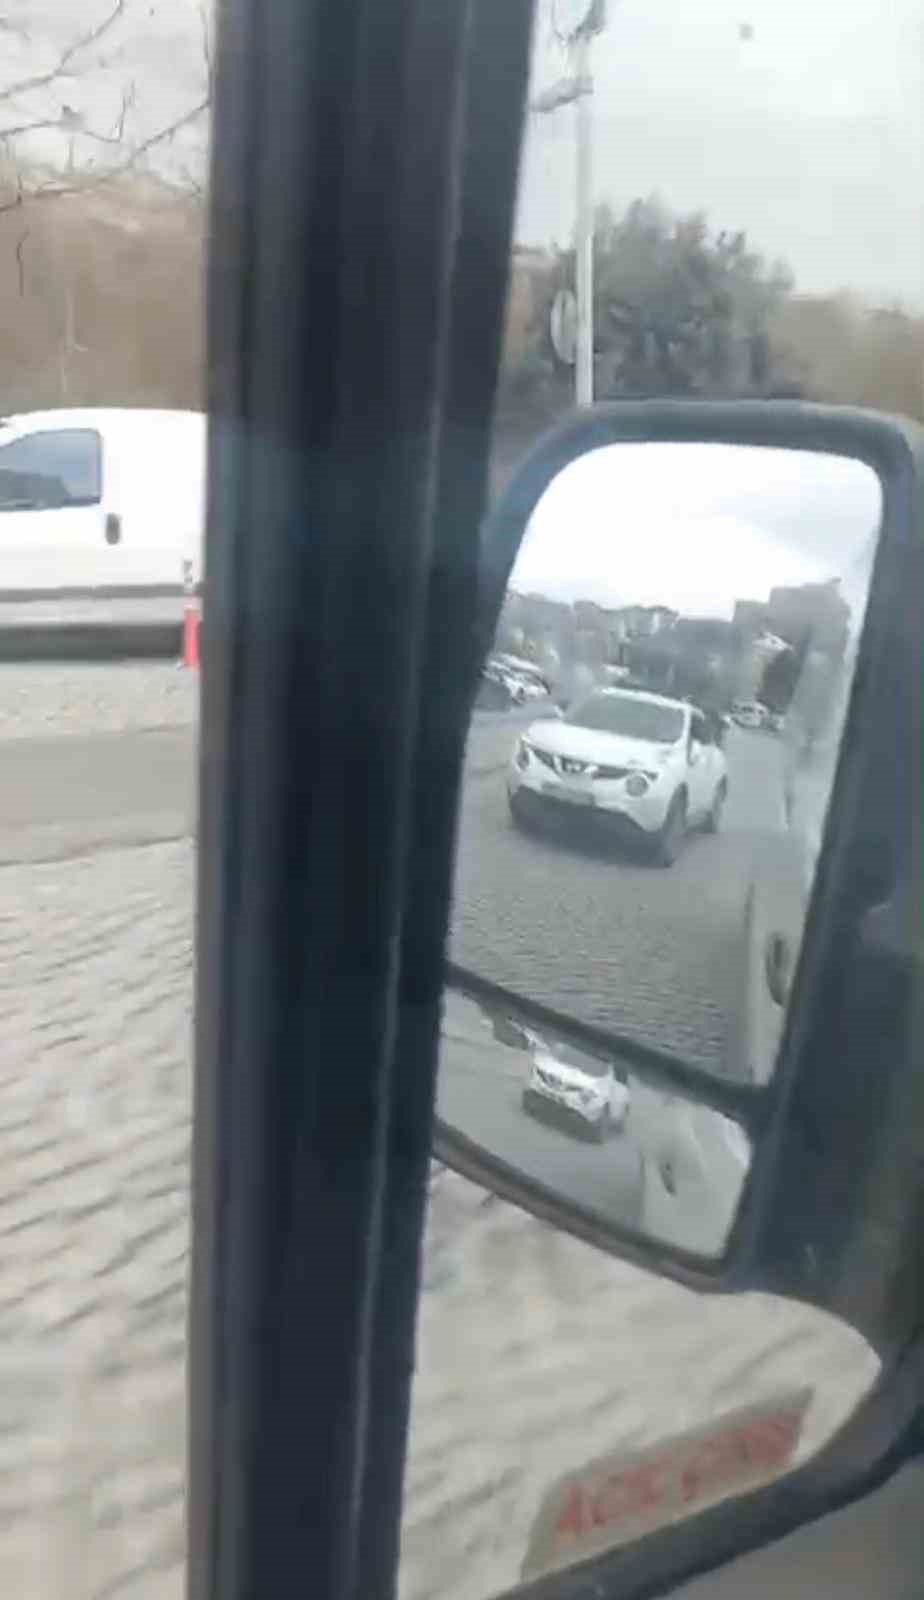 İstanbul’da okul servisi şoförünün yaşadığı korku dolu anlar kamerada: “Arabada çocuk var”
